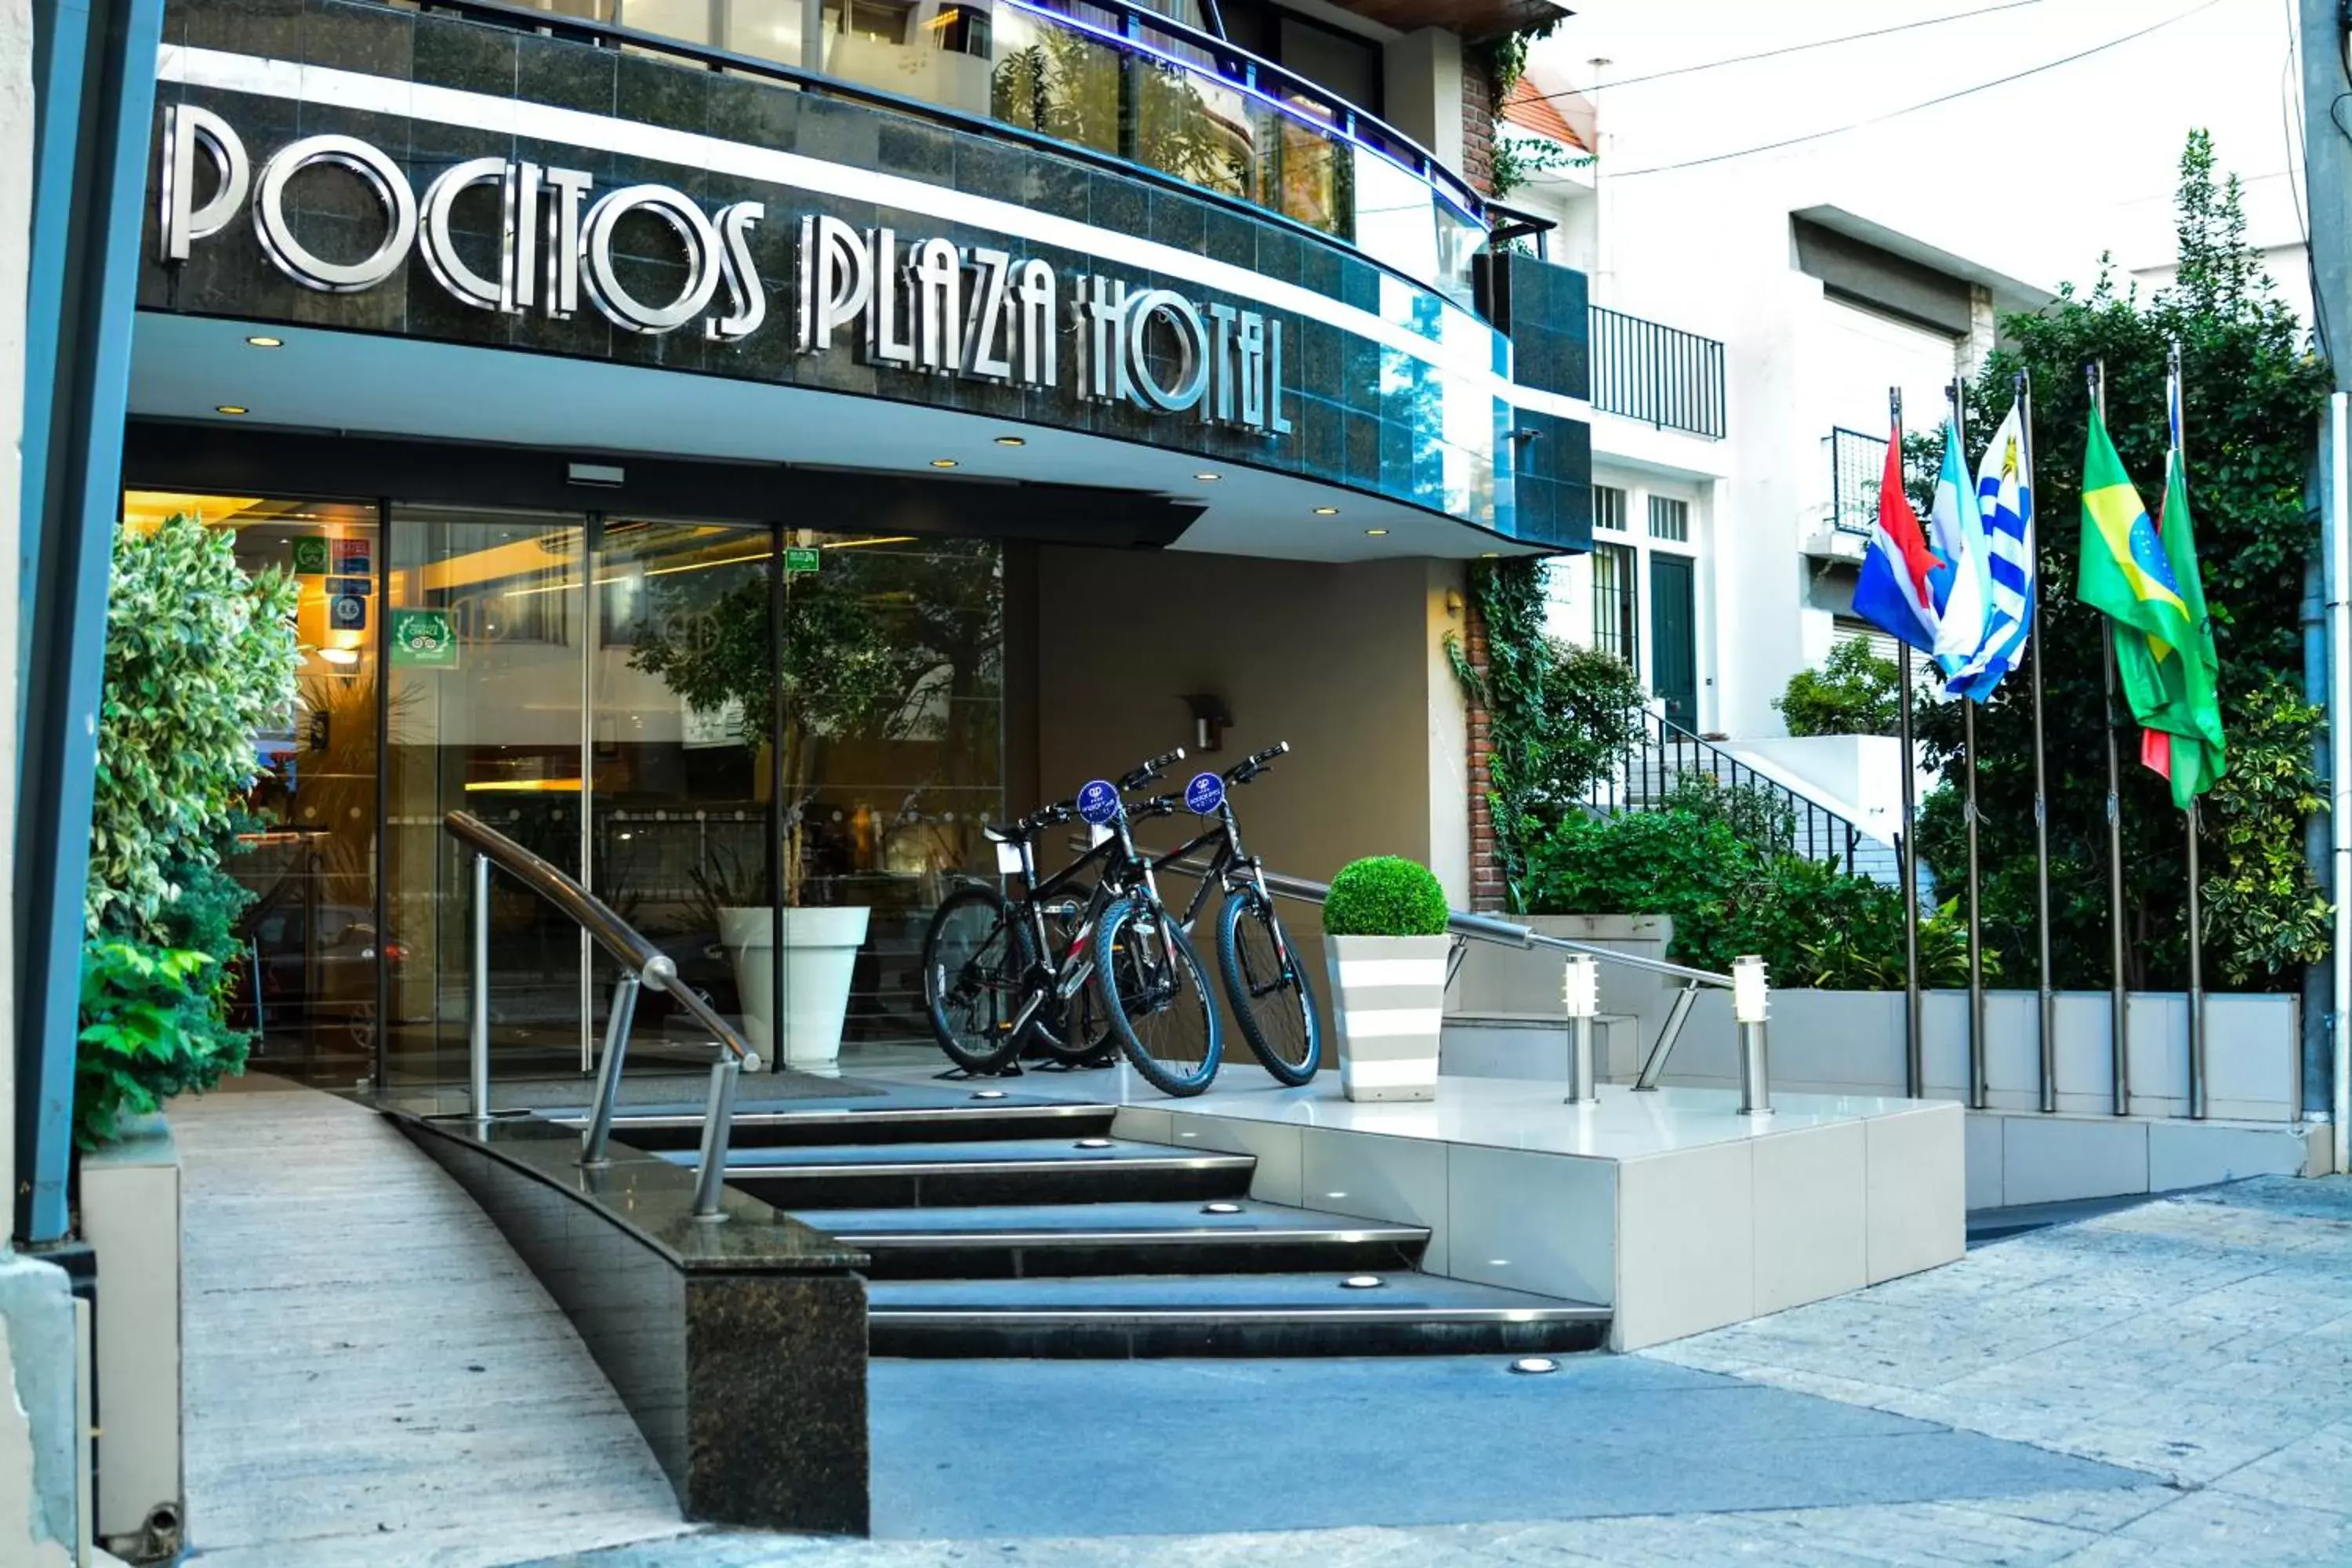 Facade/entrance in Pocitos Plaza Hotel